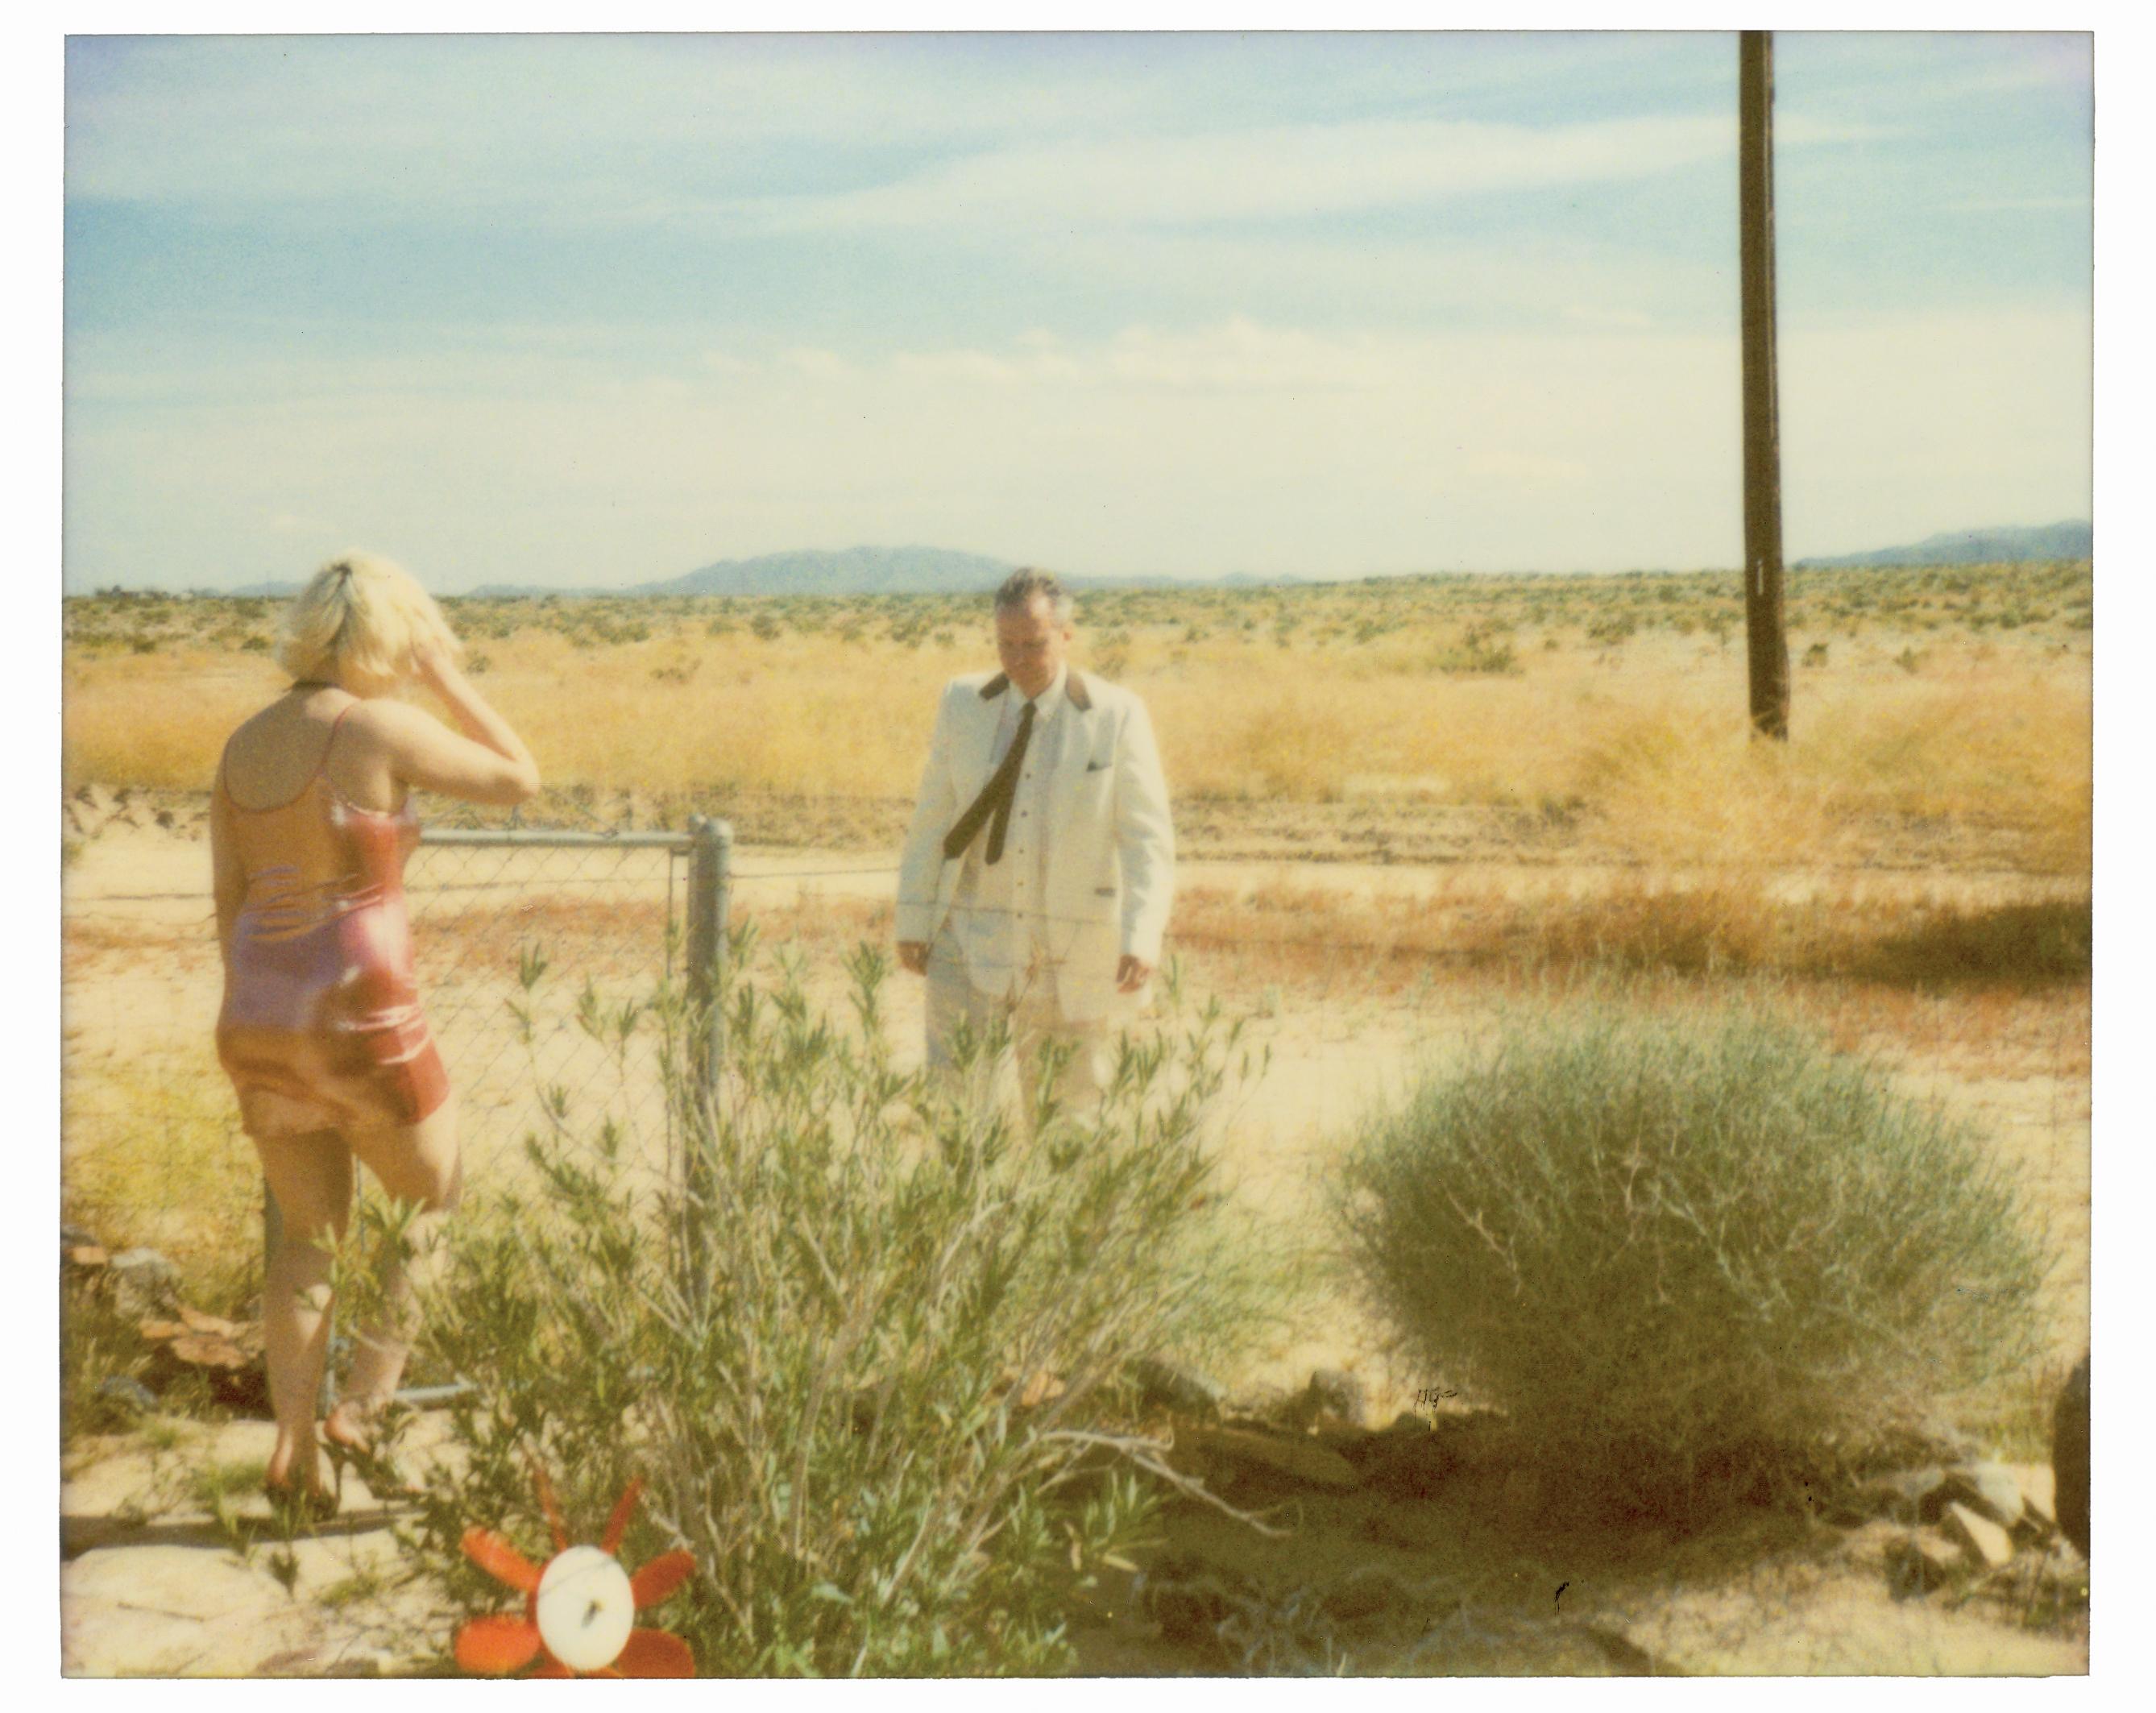 Landscape Photograph Stefanie Schneider - Wonder Valley (29 Palms, CA) - analogique, monté, imprimé à la main, Polaroid, 21e 